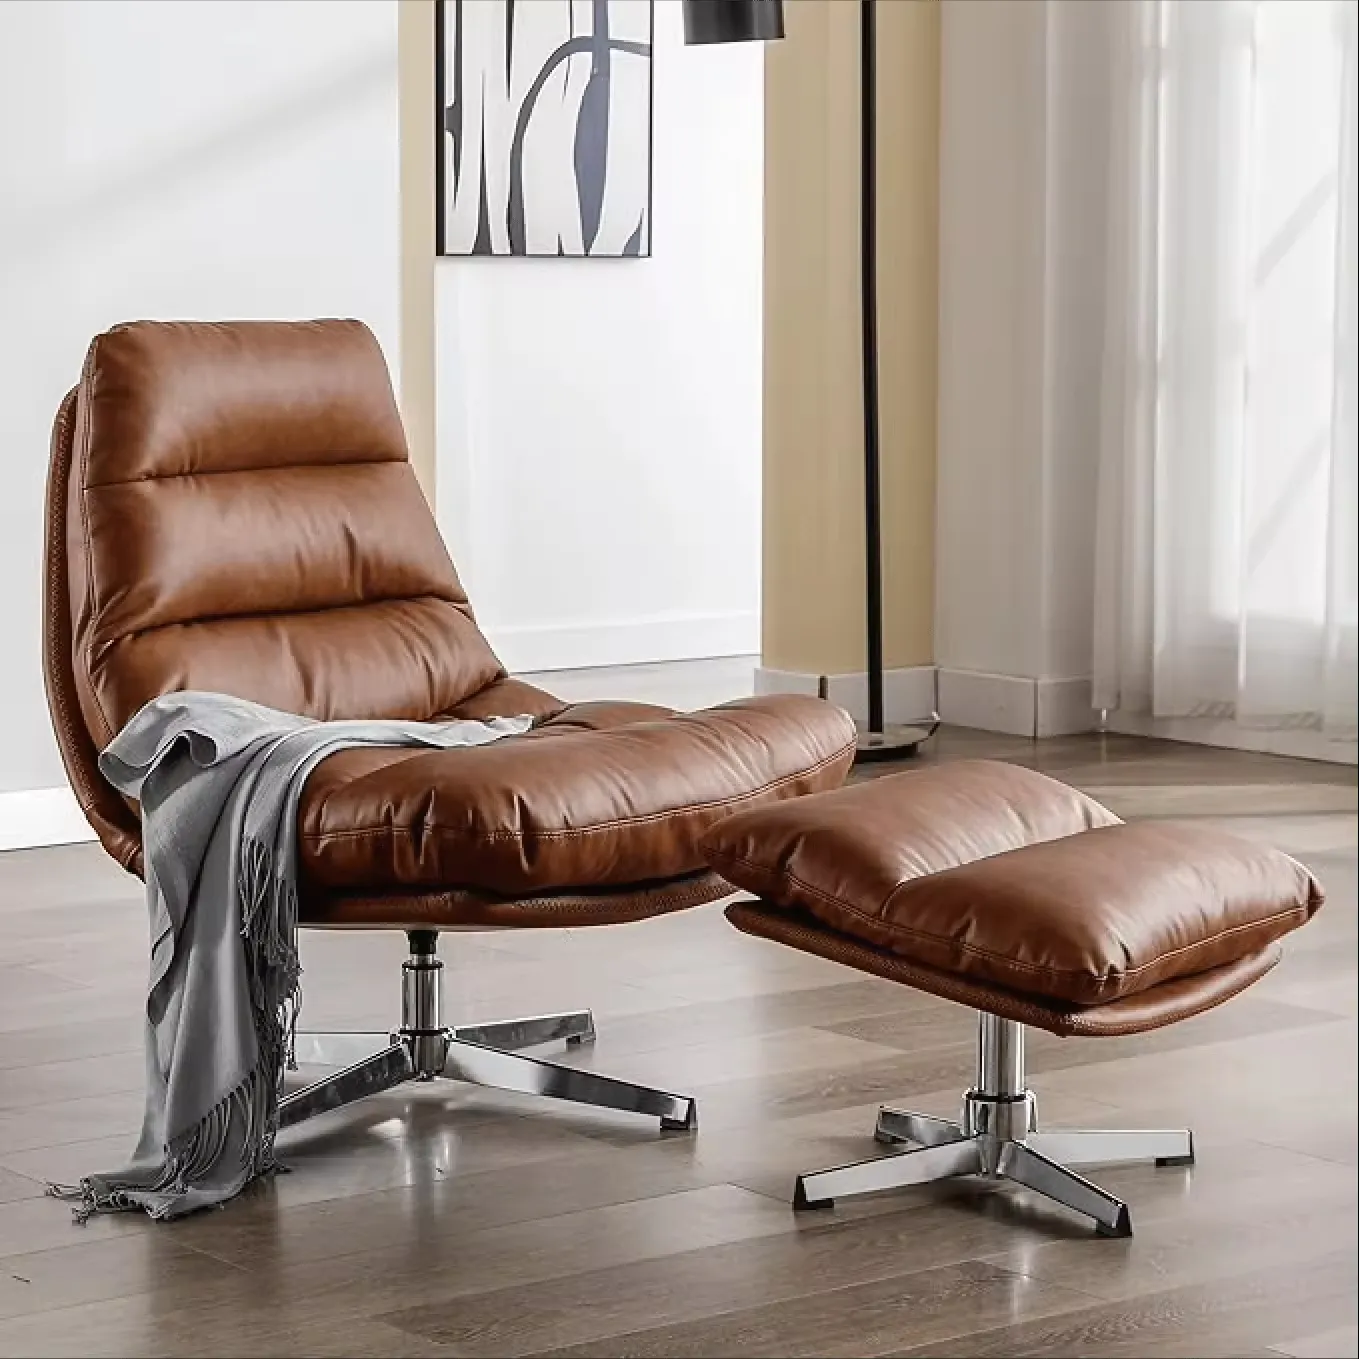 Sans vendita calda marrone girevole Chaise Lounge tessuto per il tempo libero rilassante sedia